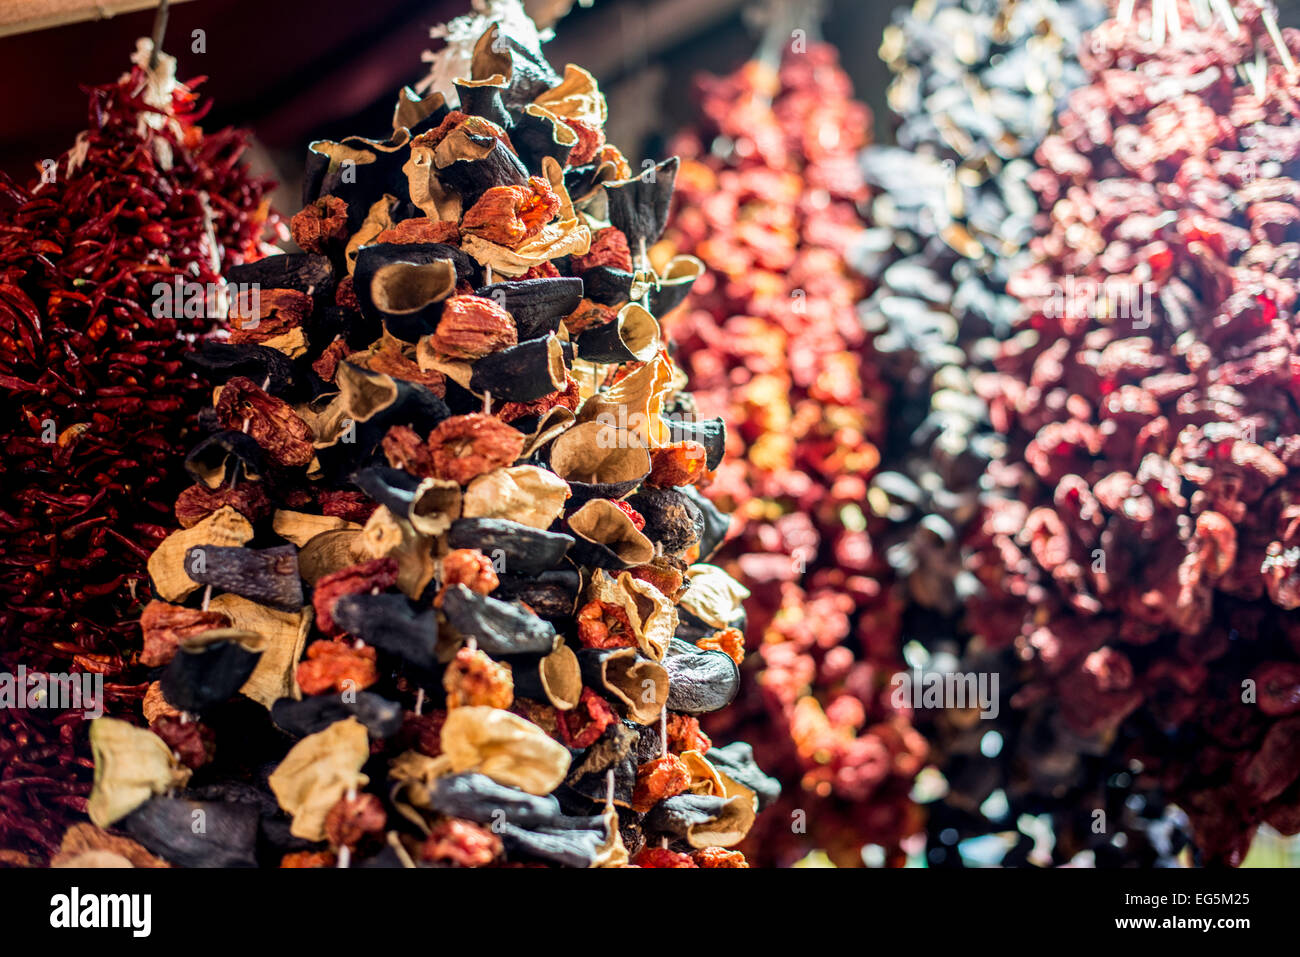 ISTANBUL, Turquie — situé dans le quartier Eminonu d'Istanbul, à côté du pont de Galata, le marché aux épices est l'un des plus grands et des plus célèbres marchés de la ville. Il est également connu sous le nom de Bazar égyptien. Établi au 17th siècle, ce marché animé reste un élément essentiel de la culture commerciale et gastronomique d'Istanbul, avec ses arômes riches et ses couleurs vives captivant tant les habitants que les touristes. Banque D'Images